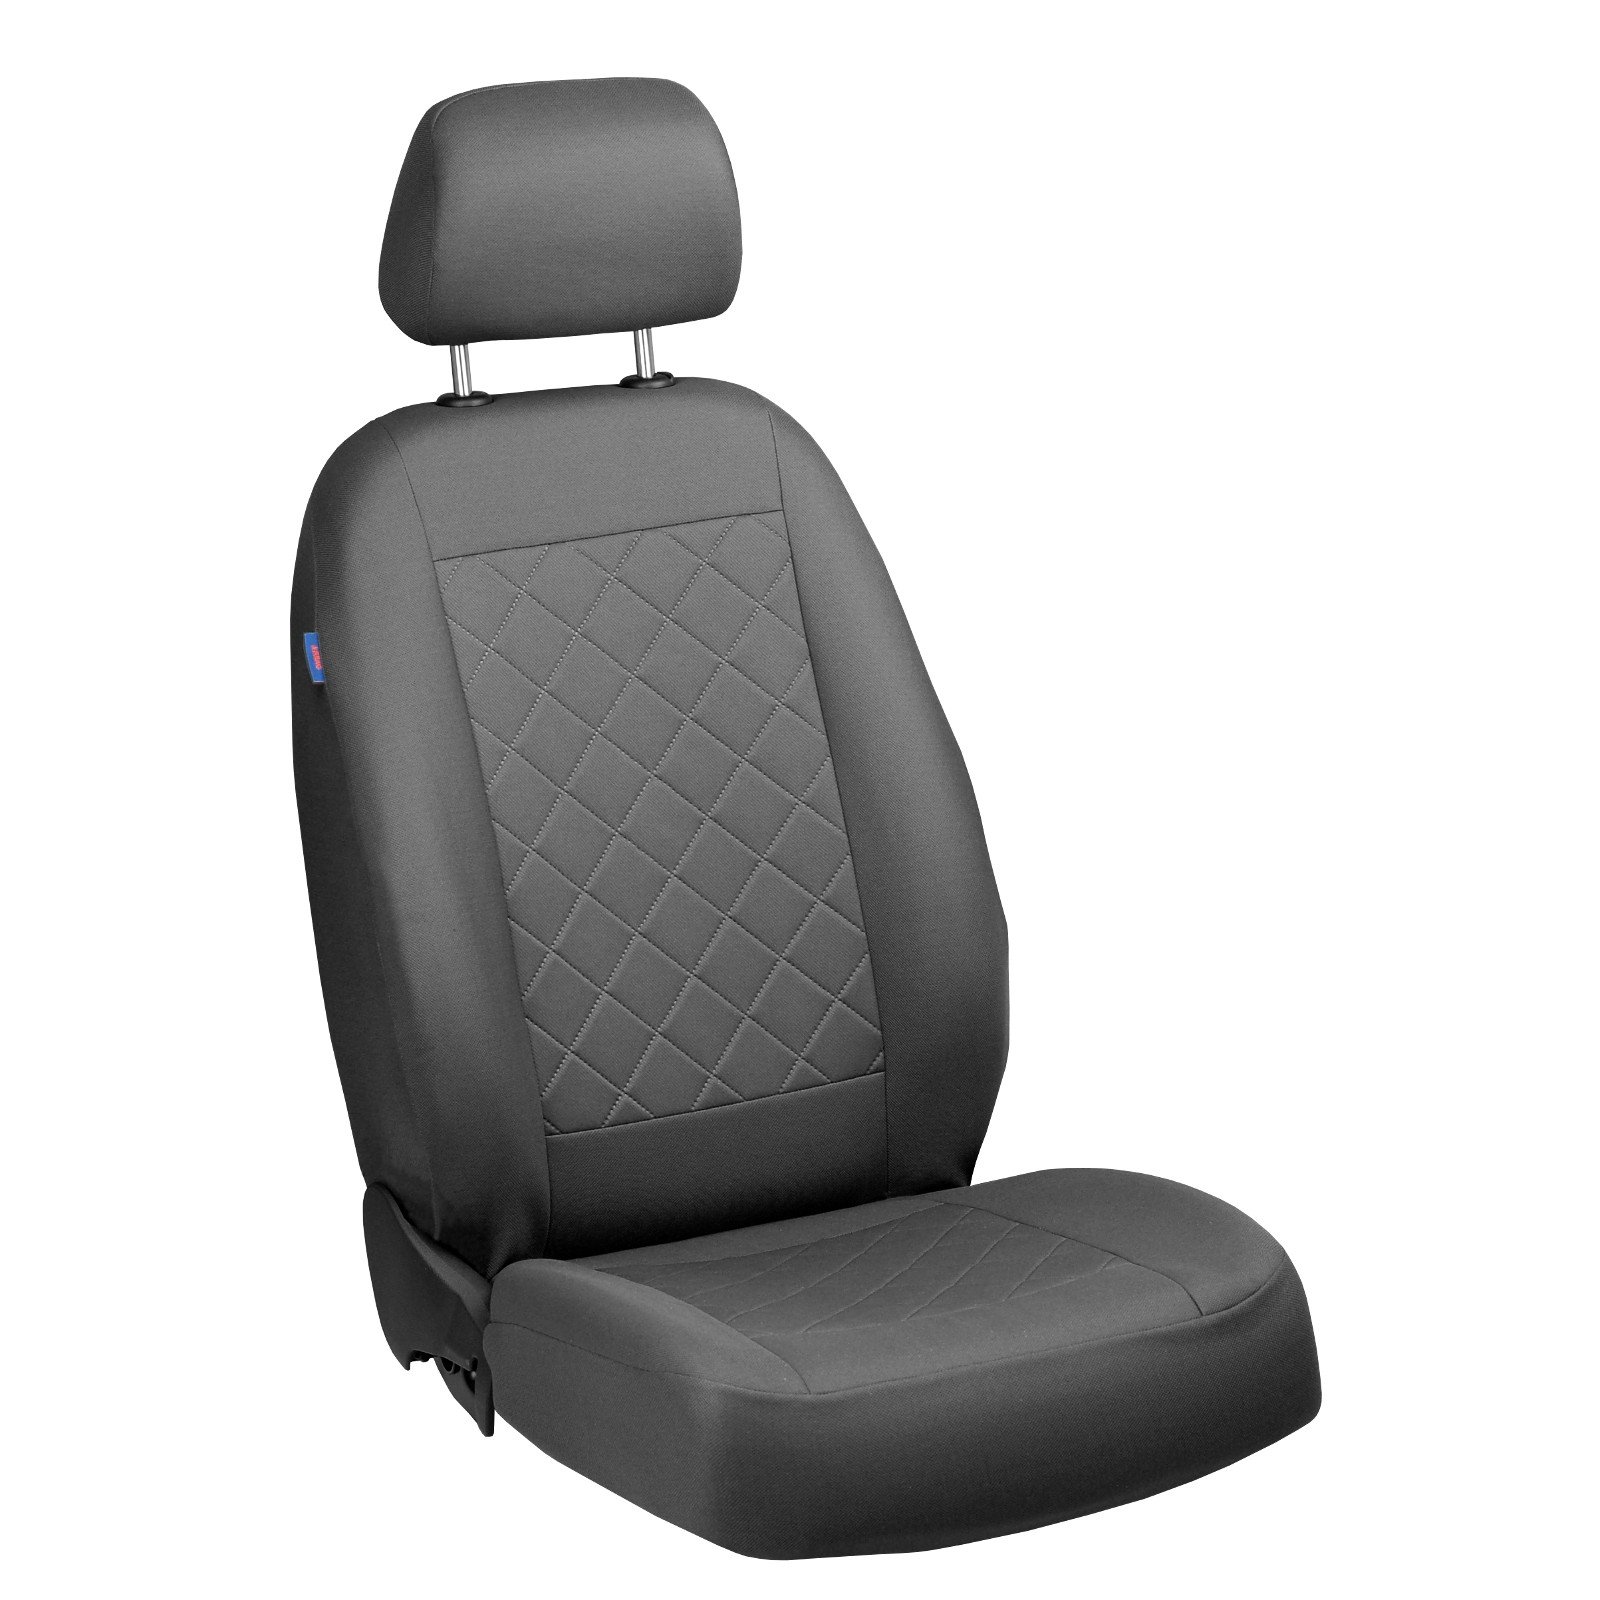 Zakschneider T3 Fahrer Sitzbezug - Farbe Premium Grau von Zakschneider